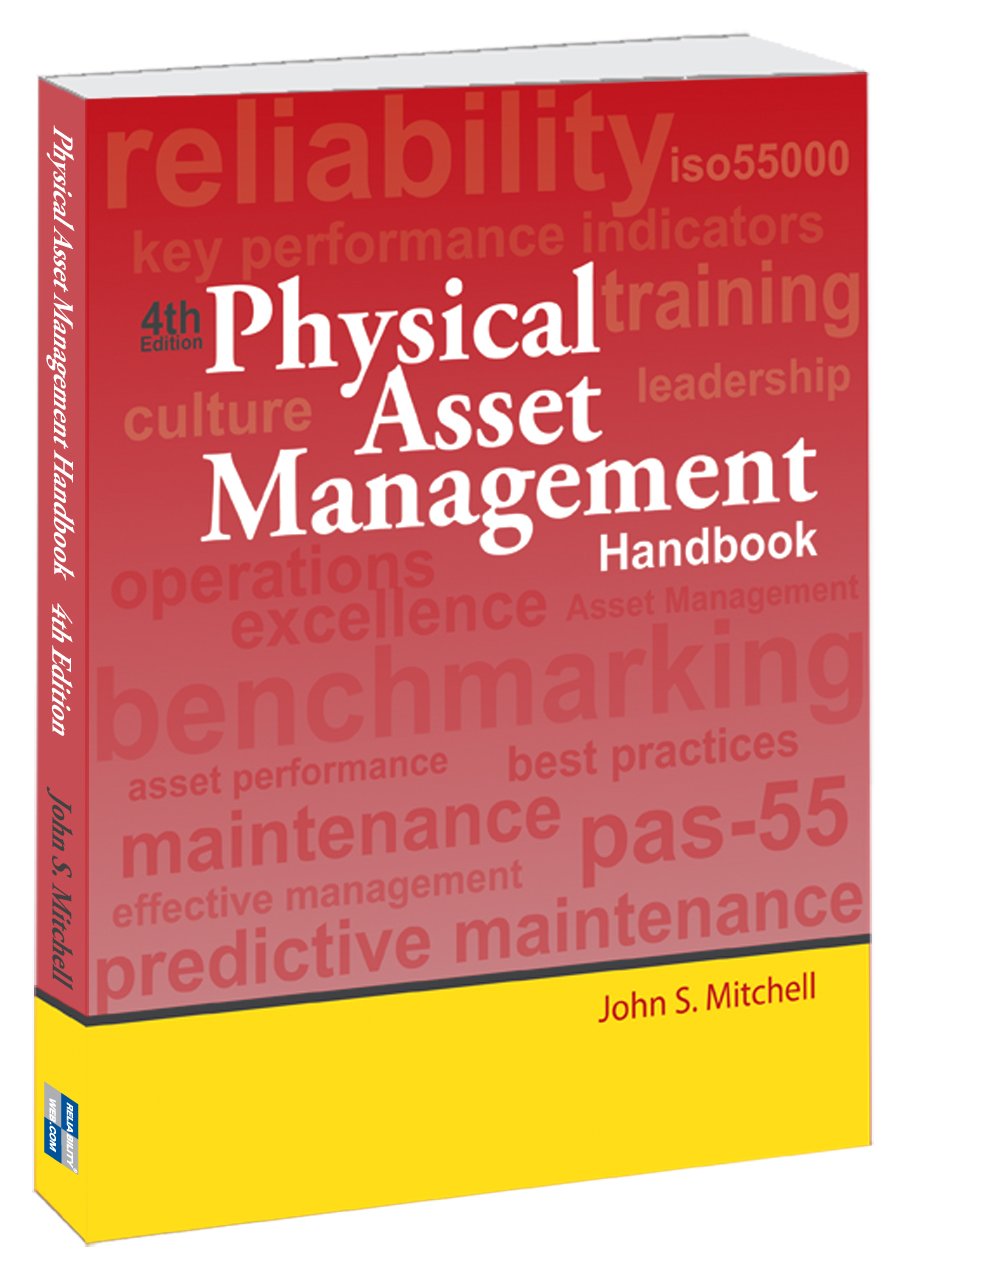 Physical Asset Management Handbook John S Mitchell Pdf Printer